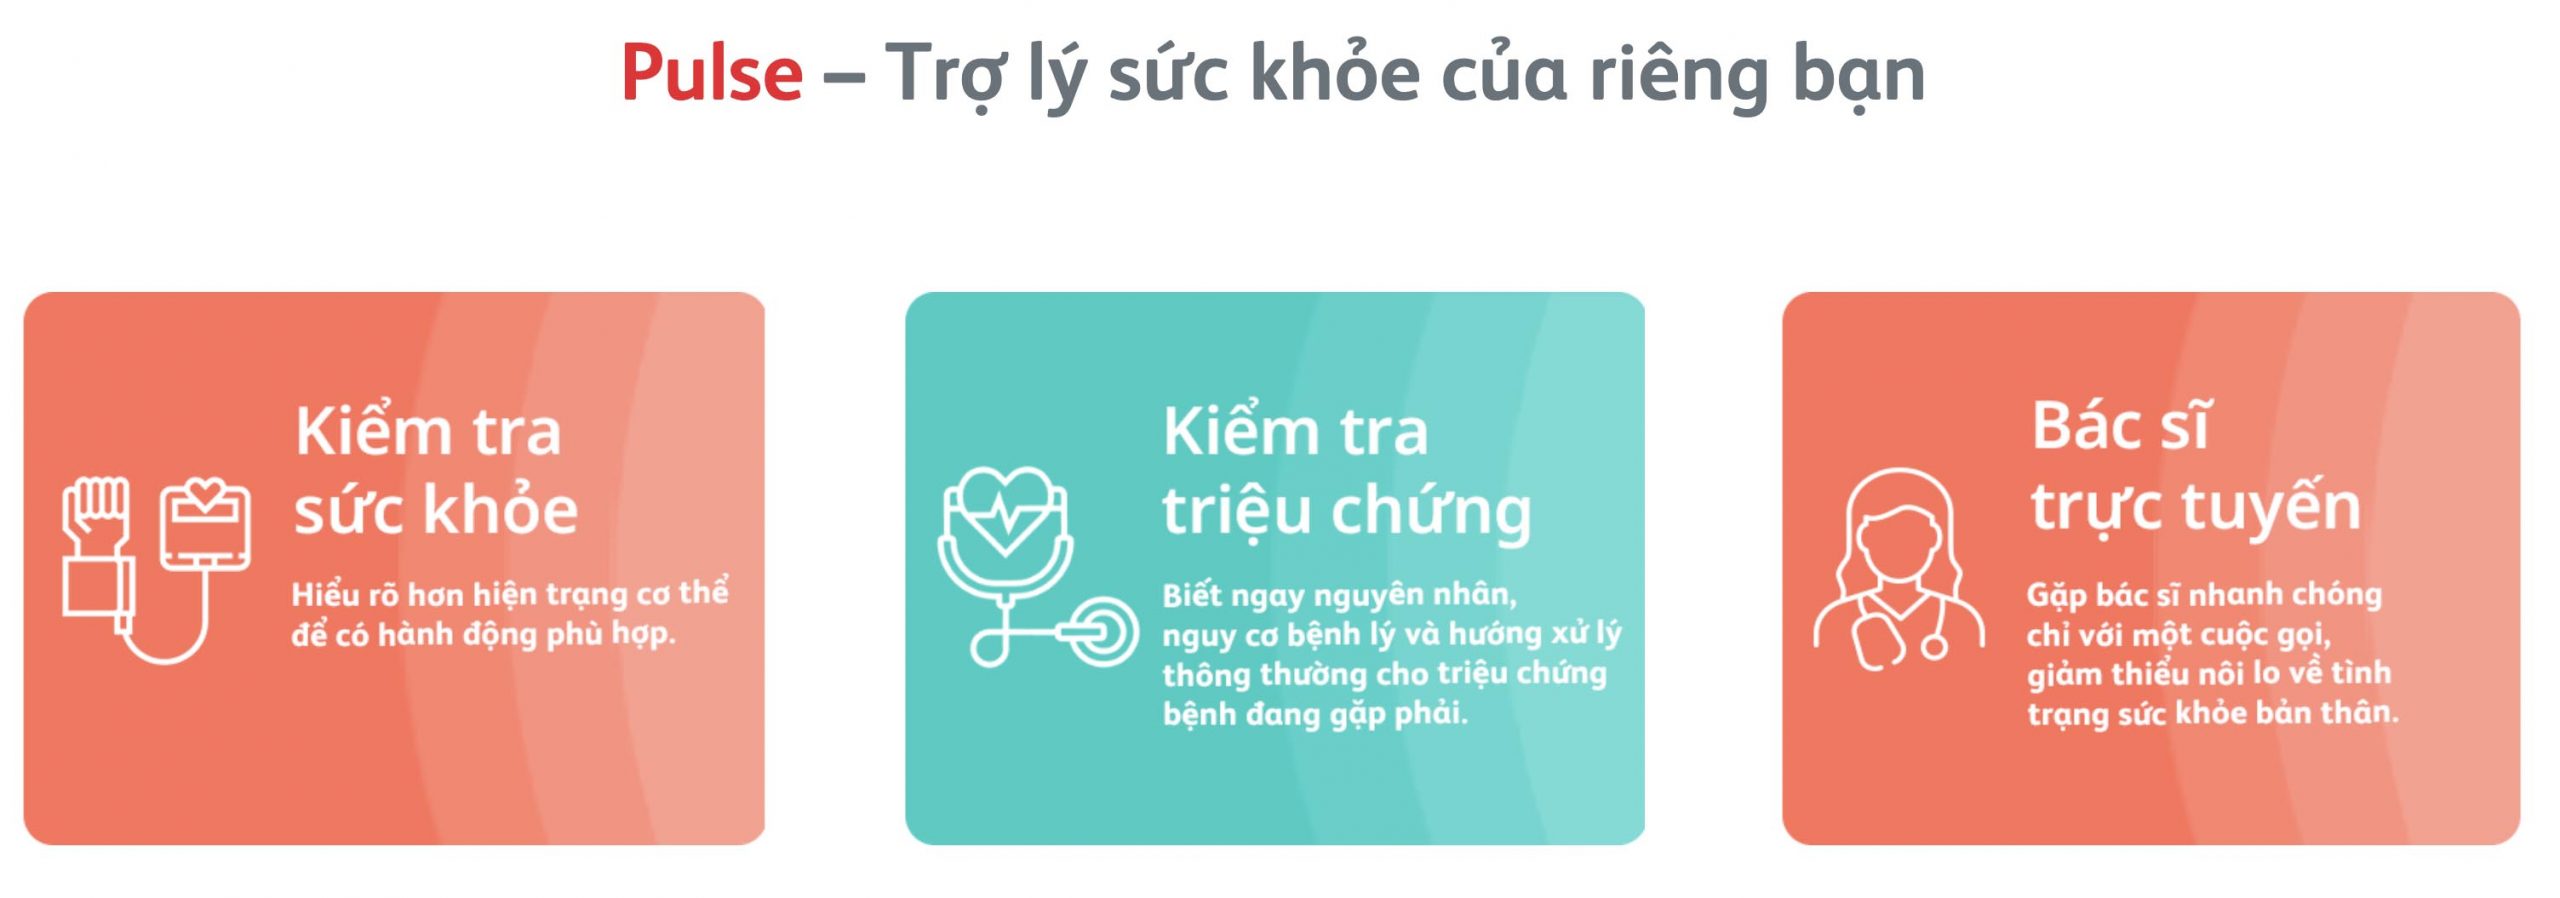 Prudential Việt Nam ra mắt ứng dụng chăm sóc sức khỏe Pulse by Prudential